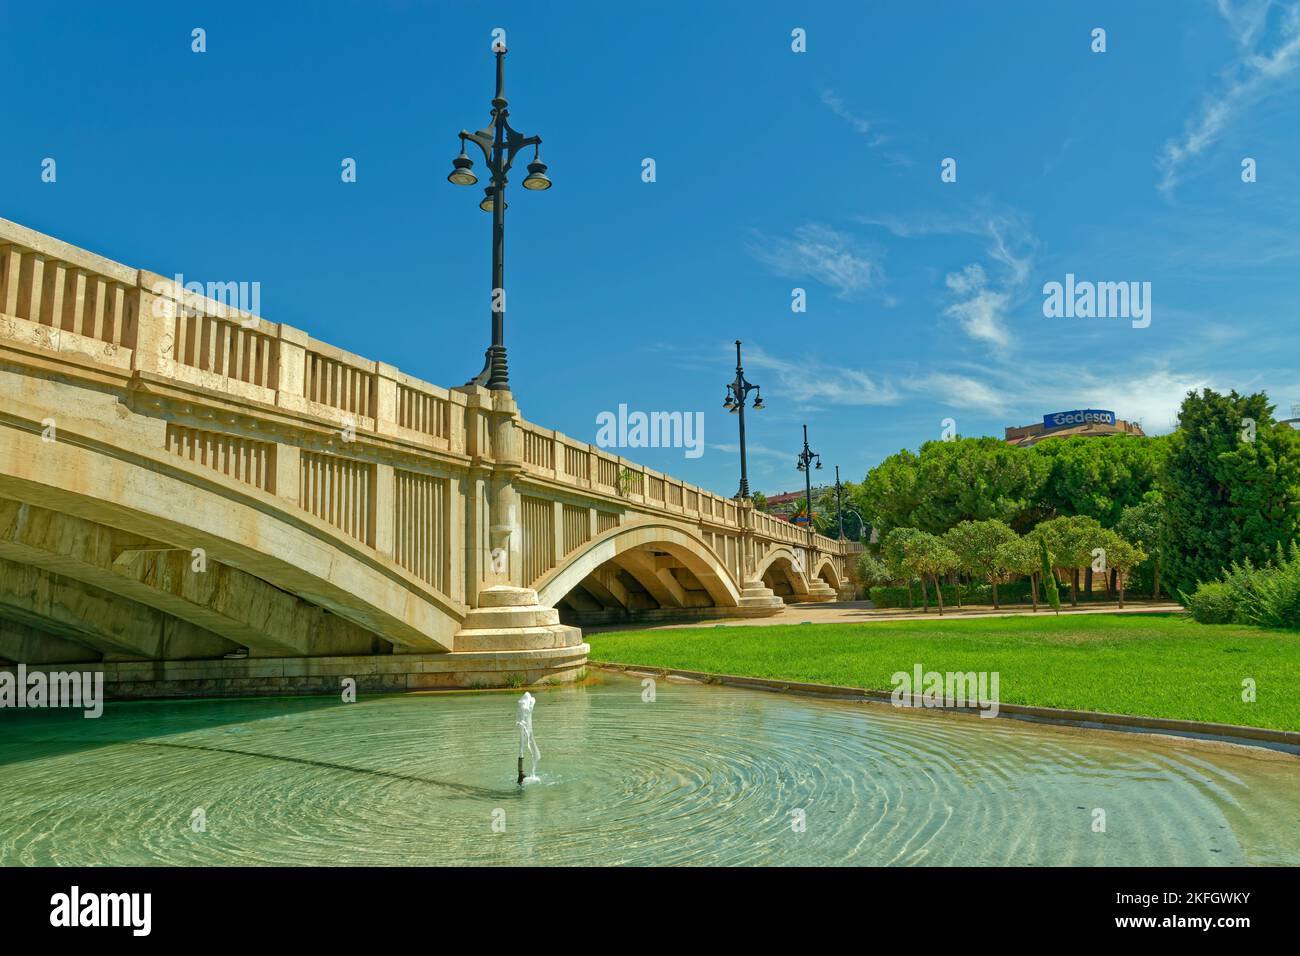 Ancien pont qui couvrait la rivière Turia avant que la rivière ne soit redirigée loin du centre-ville de Valence pour éviter les inondations, province de Valence, Espagne. Banque D'Images